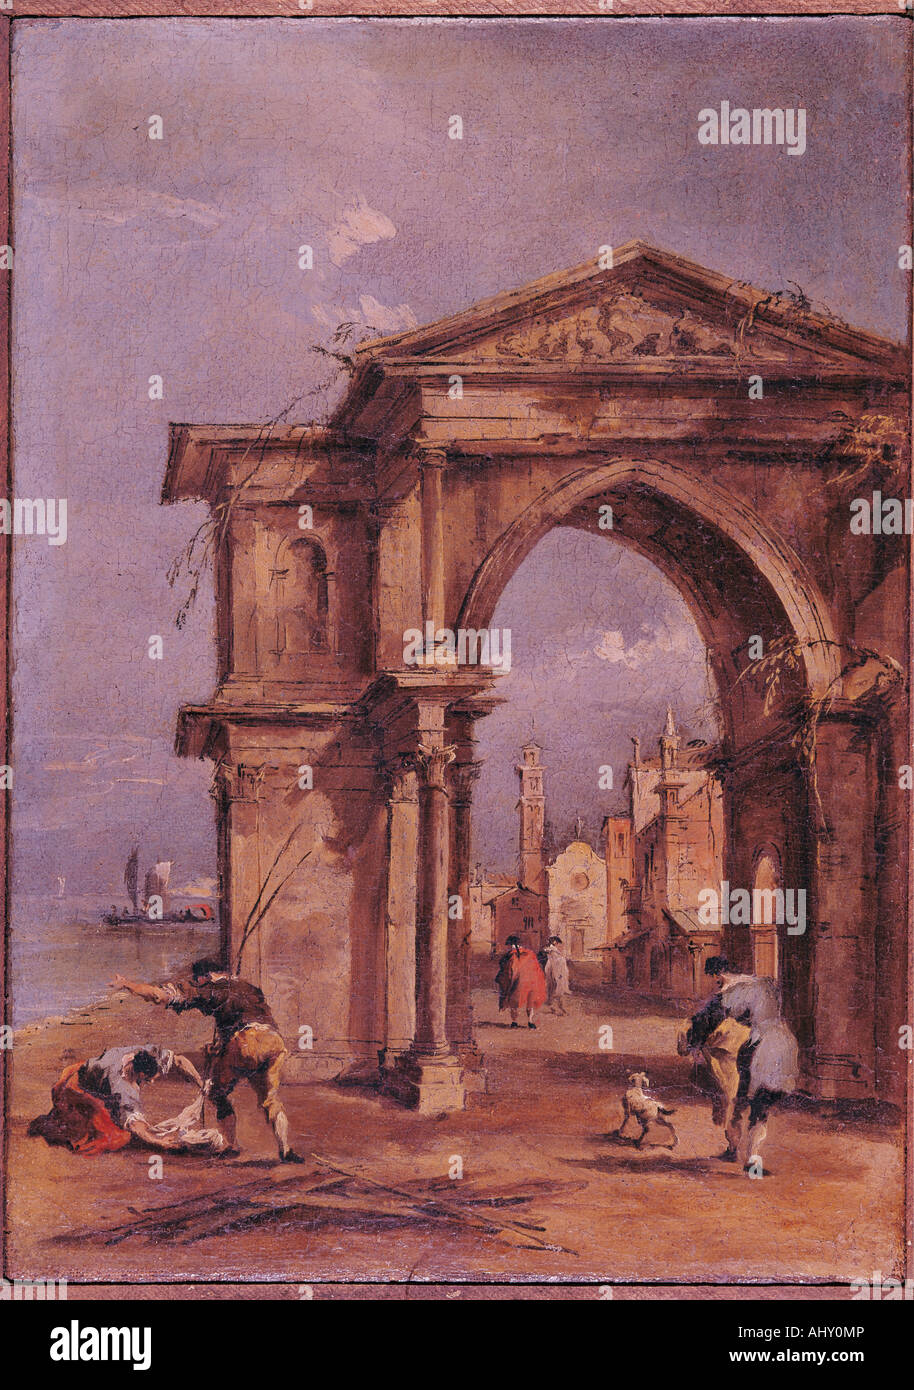 "Belle Arti, Guardi, Francesco (1712 - 1793), pittura, 'Arch con macchiette' ('arch con tipici abitanti"), circa 1770 Foto Stock